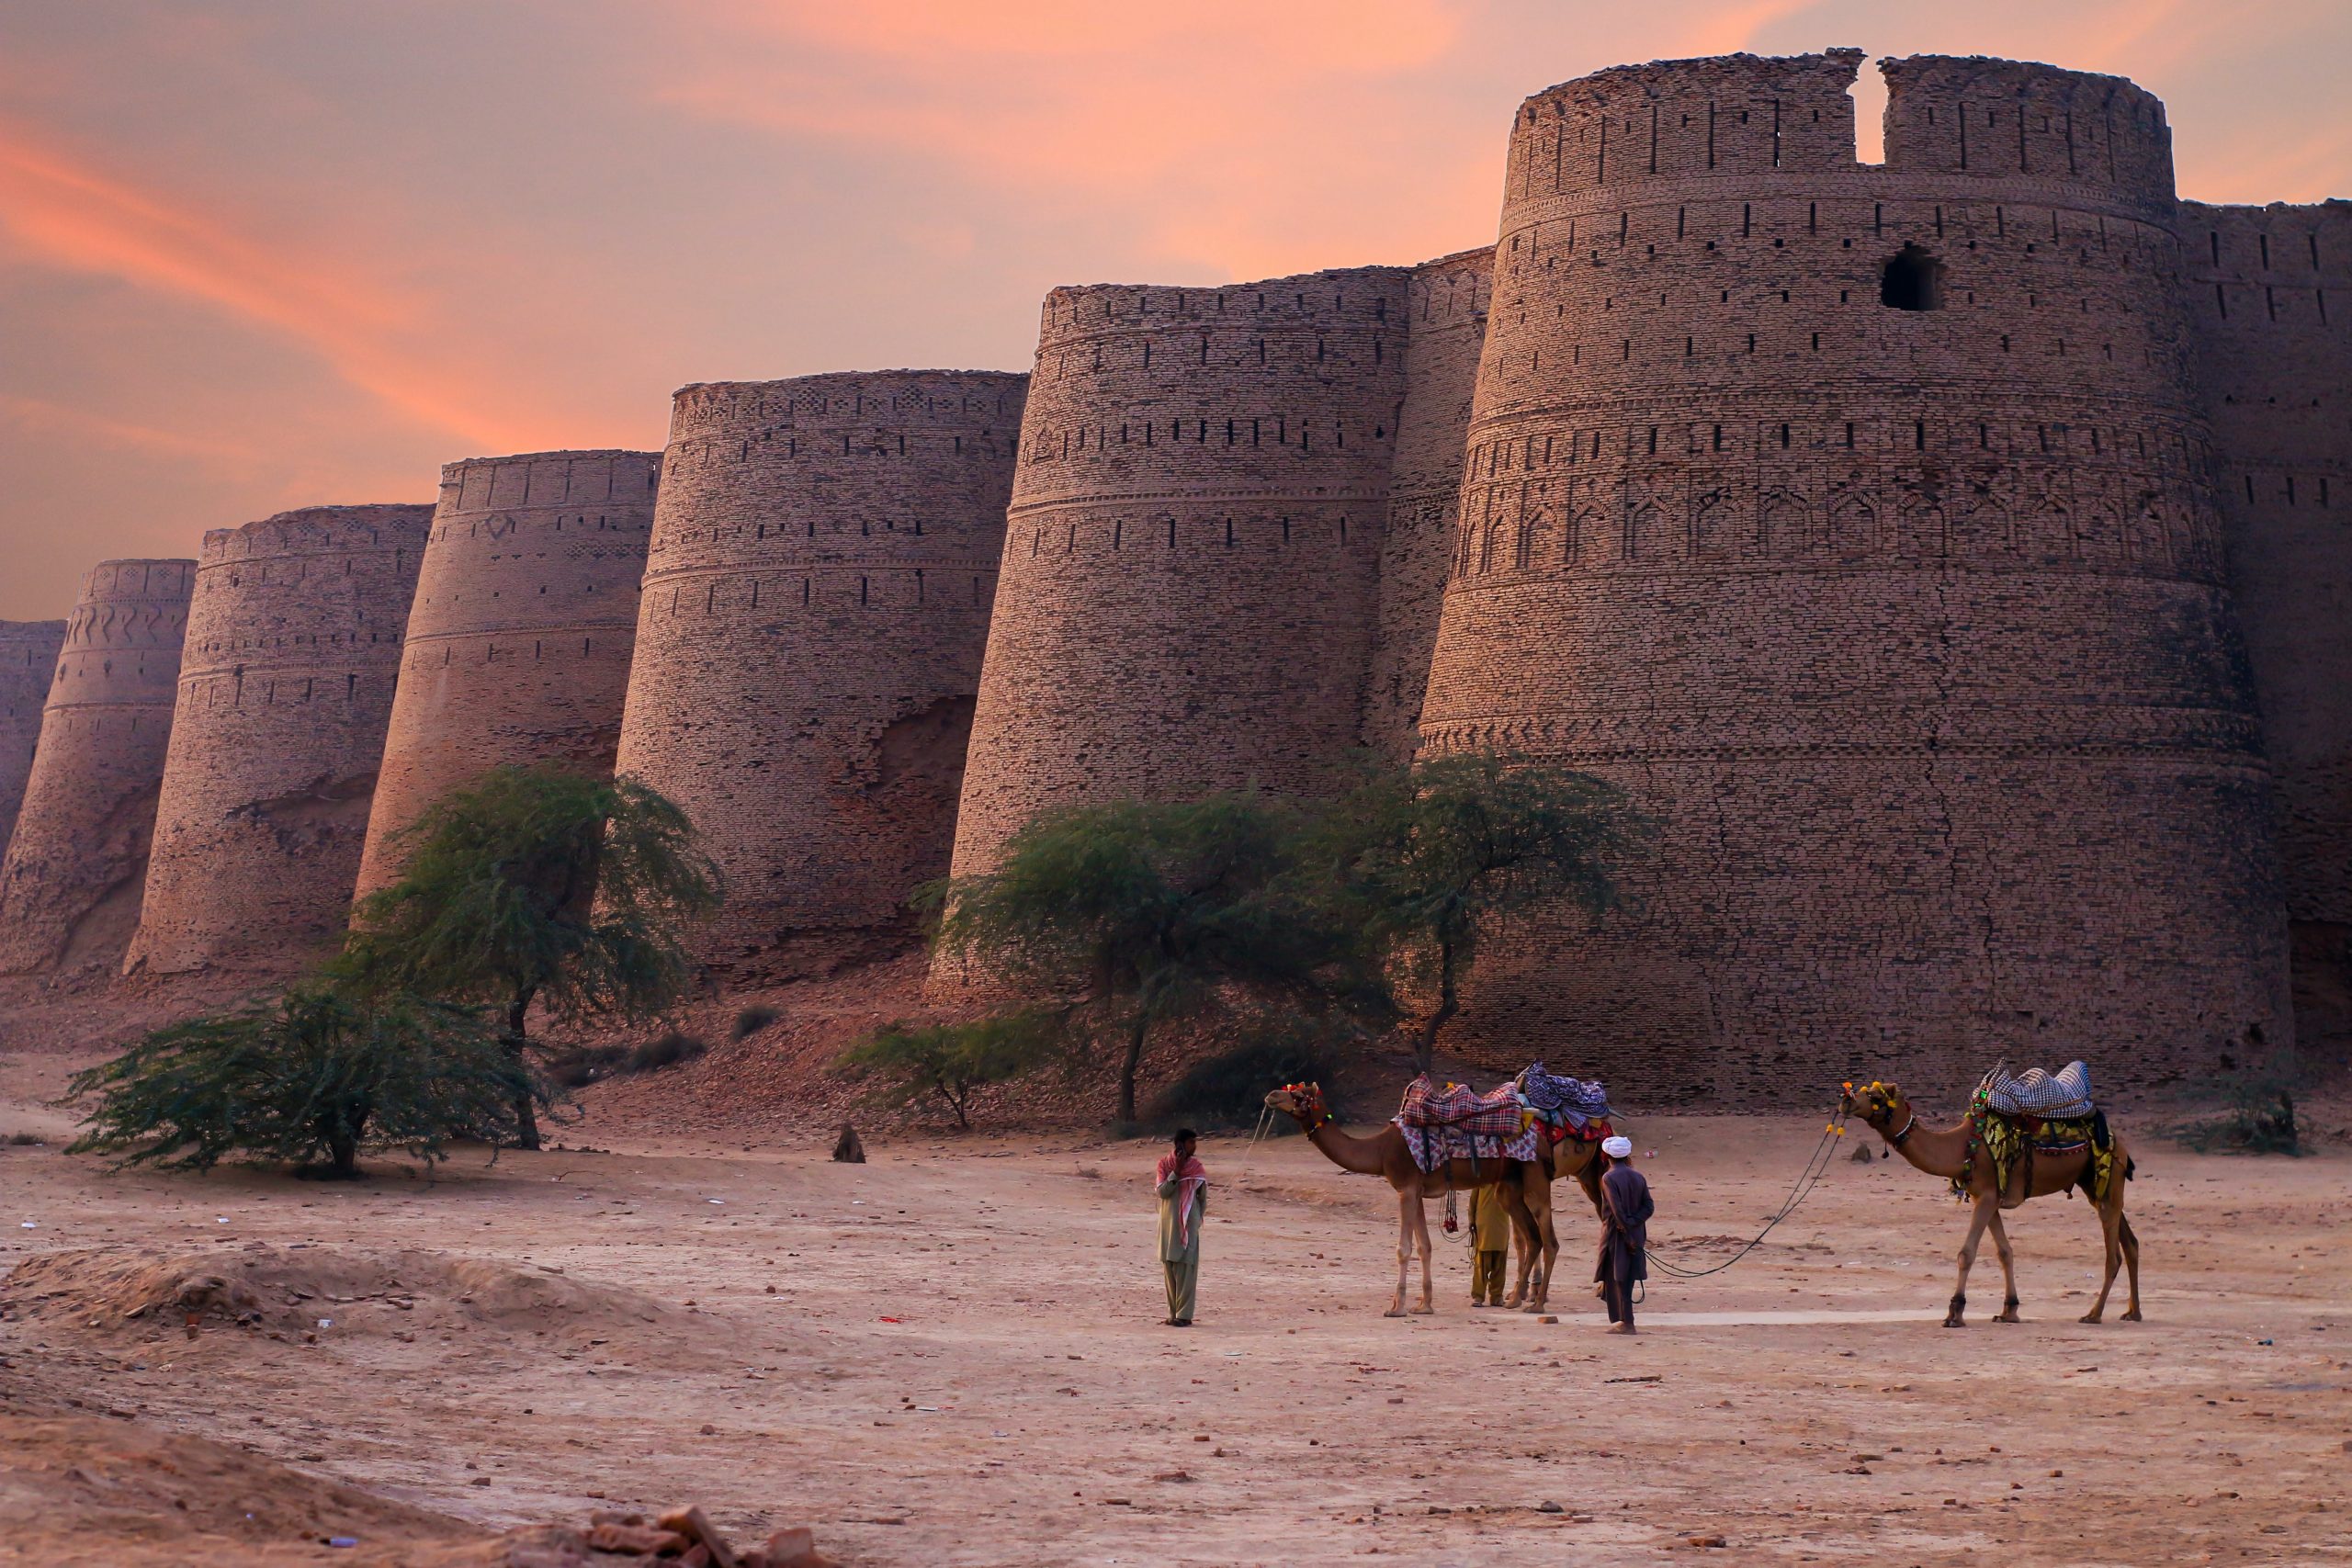 Derawar Fort at Sunset, Pakistan. Photo: Syed Hasan Mehdi